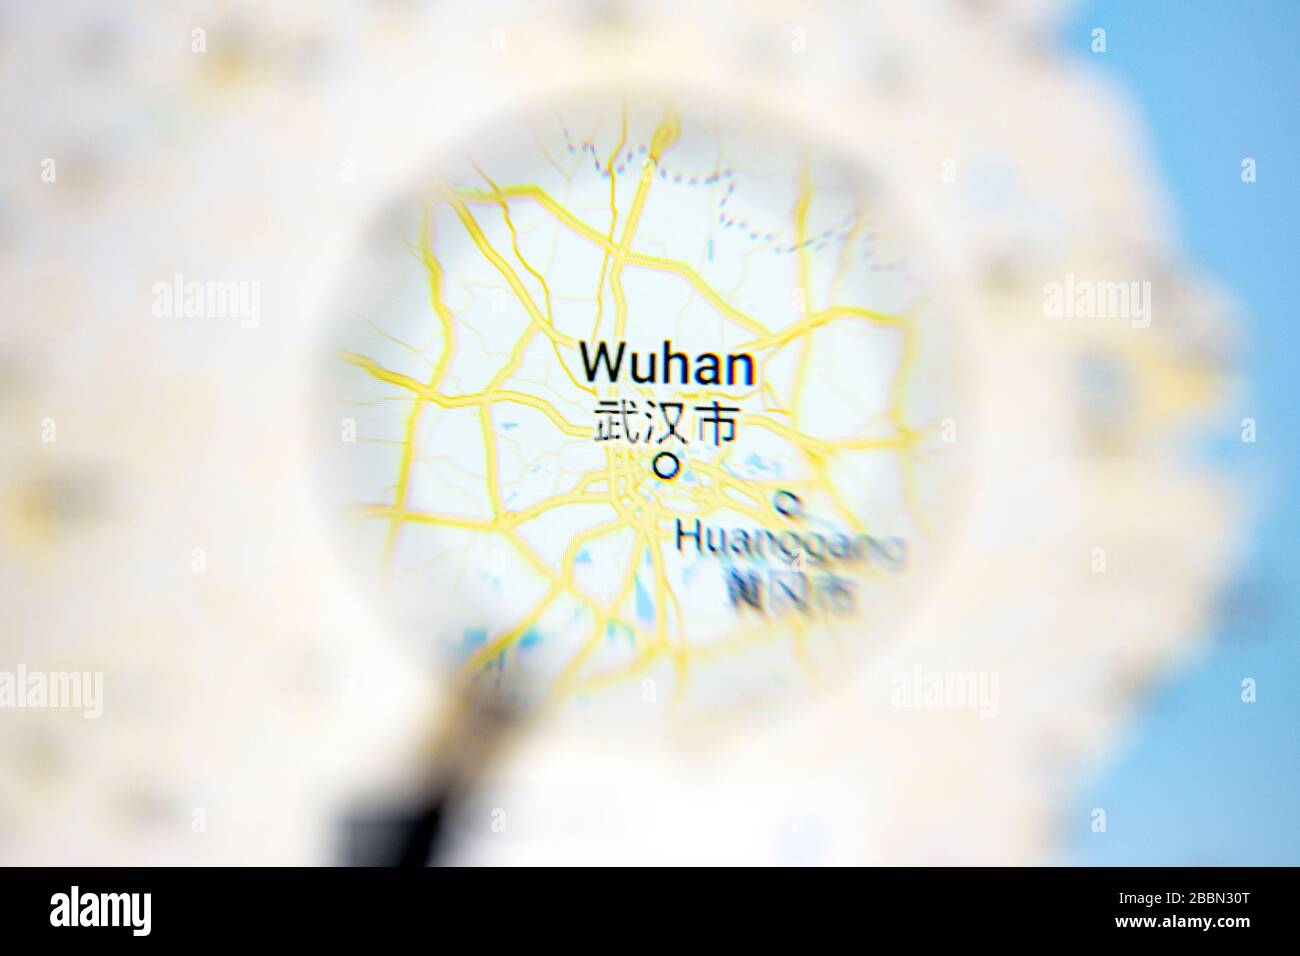 Ostersund, Schweden - Mars 28, 2020: Wuhan auf Google Maps unter einer Lupe. Wuhan ist die Stadt im Zentrum von Coronavirus. Stockfoto